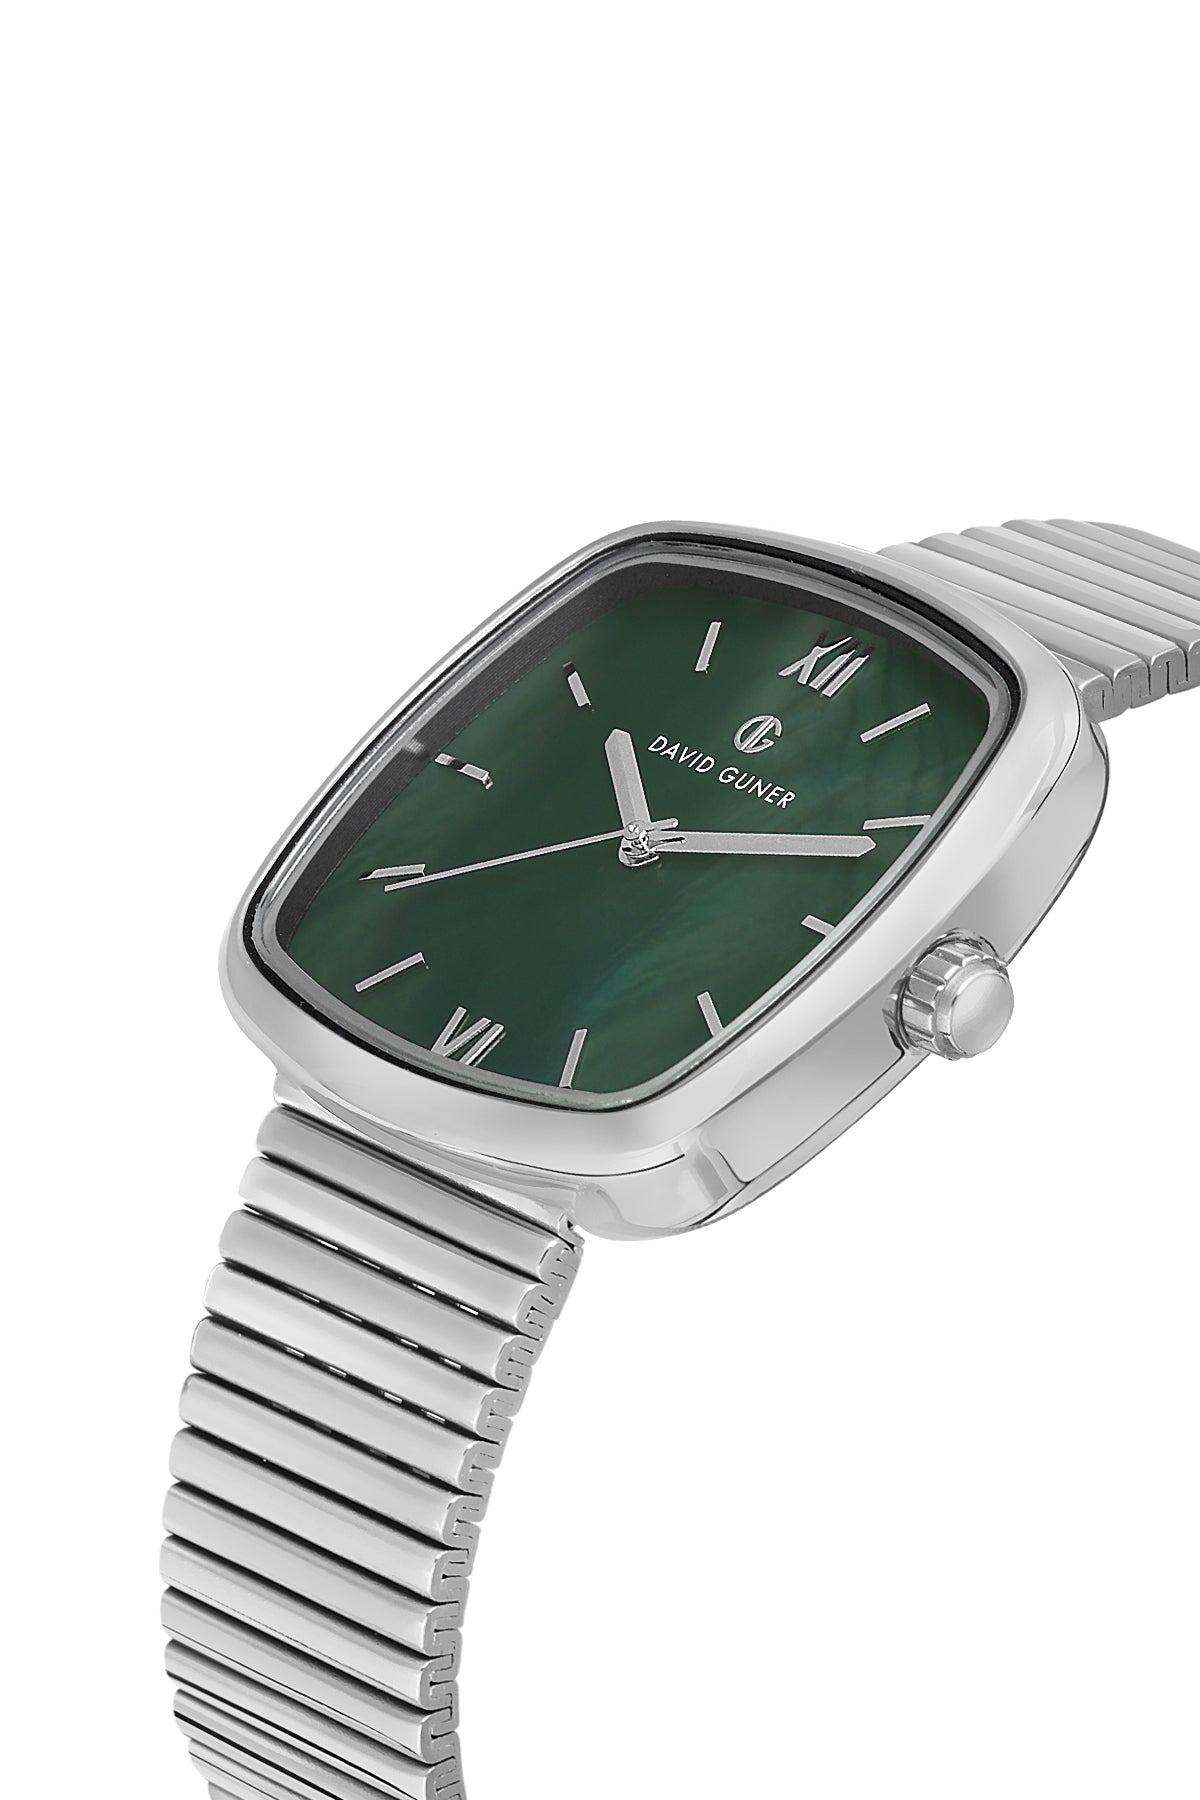 David Guner Green Dial Silver Plated Women's Wristwatch